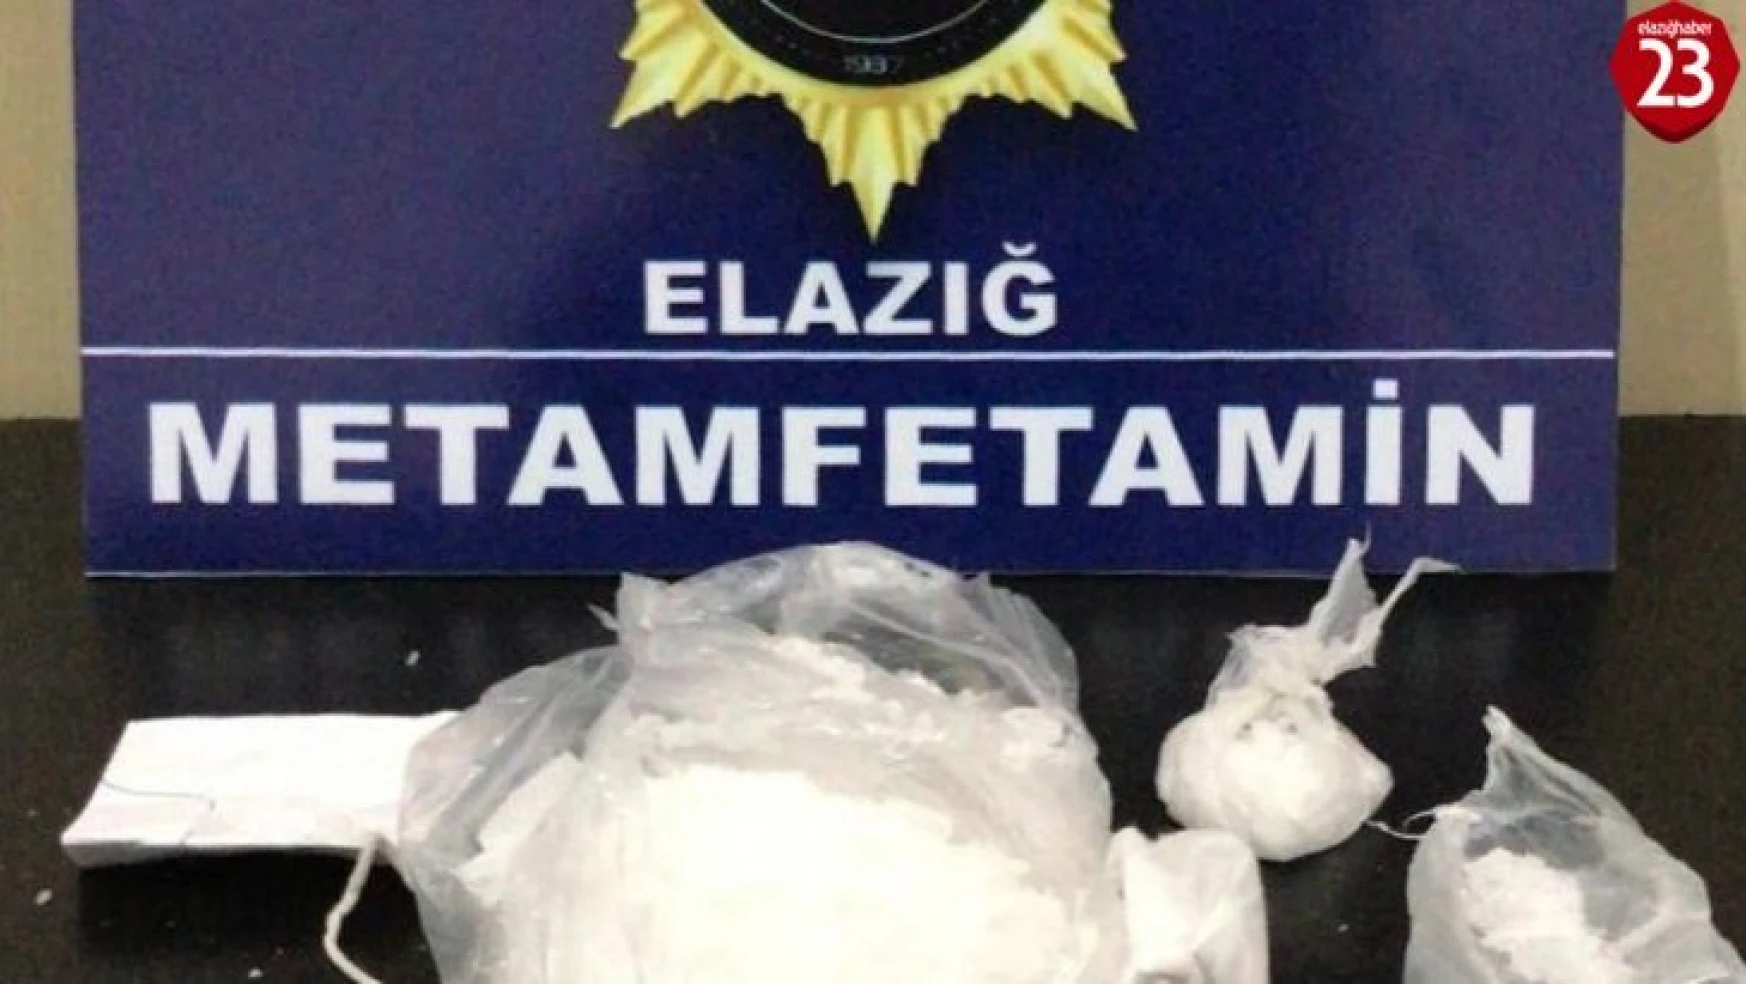 Elazığ'da uyuşturucuyu atıp kaçmaya çalışan şüpheli tutuklandı